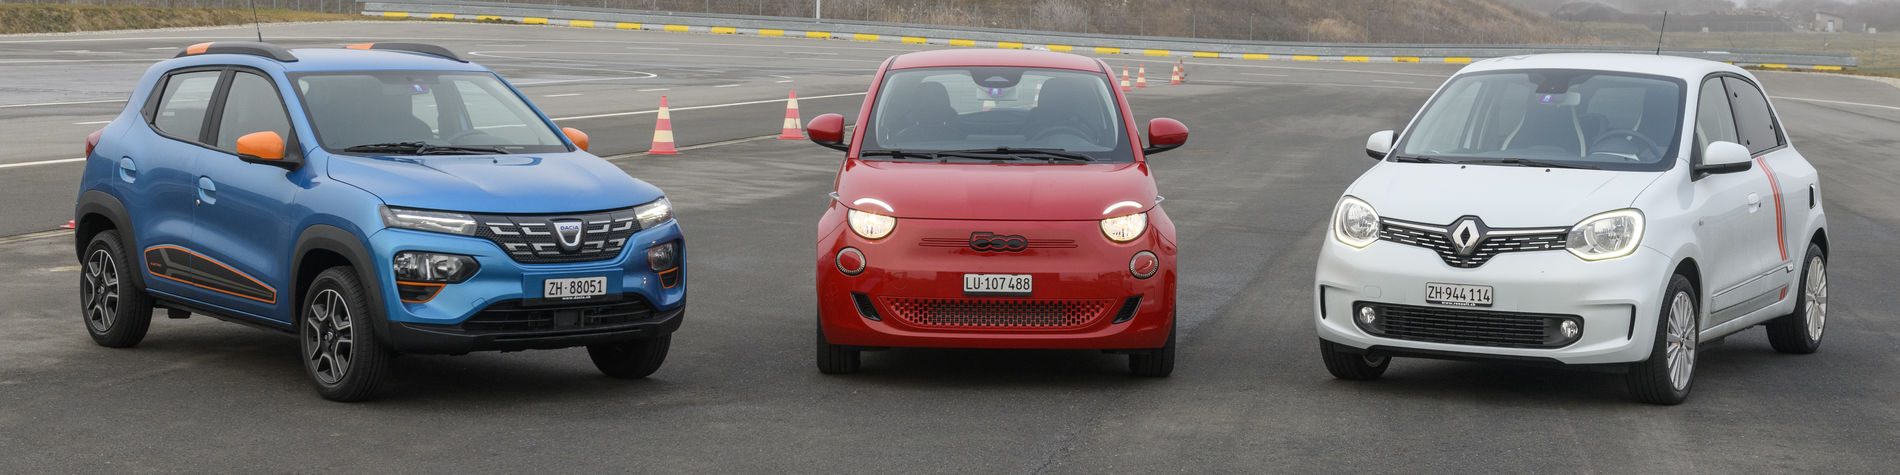 Petites voitures électriques: Dacia, Fiat et Renault en test - TCS Suisse